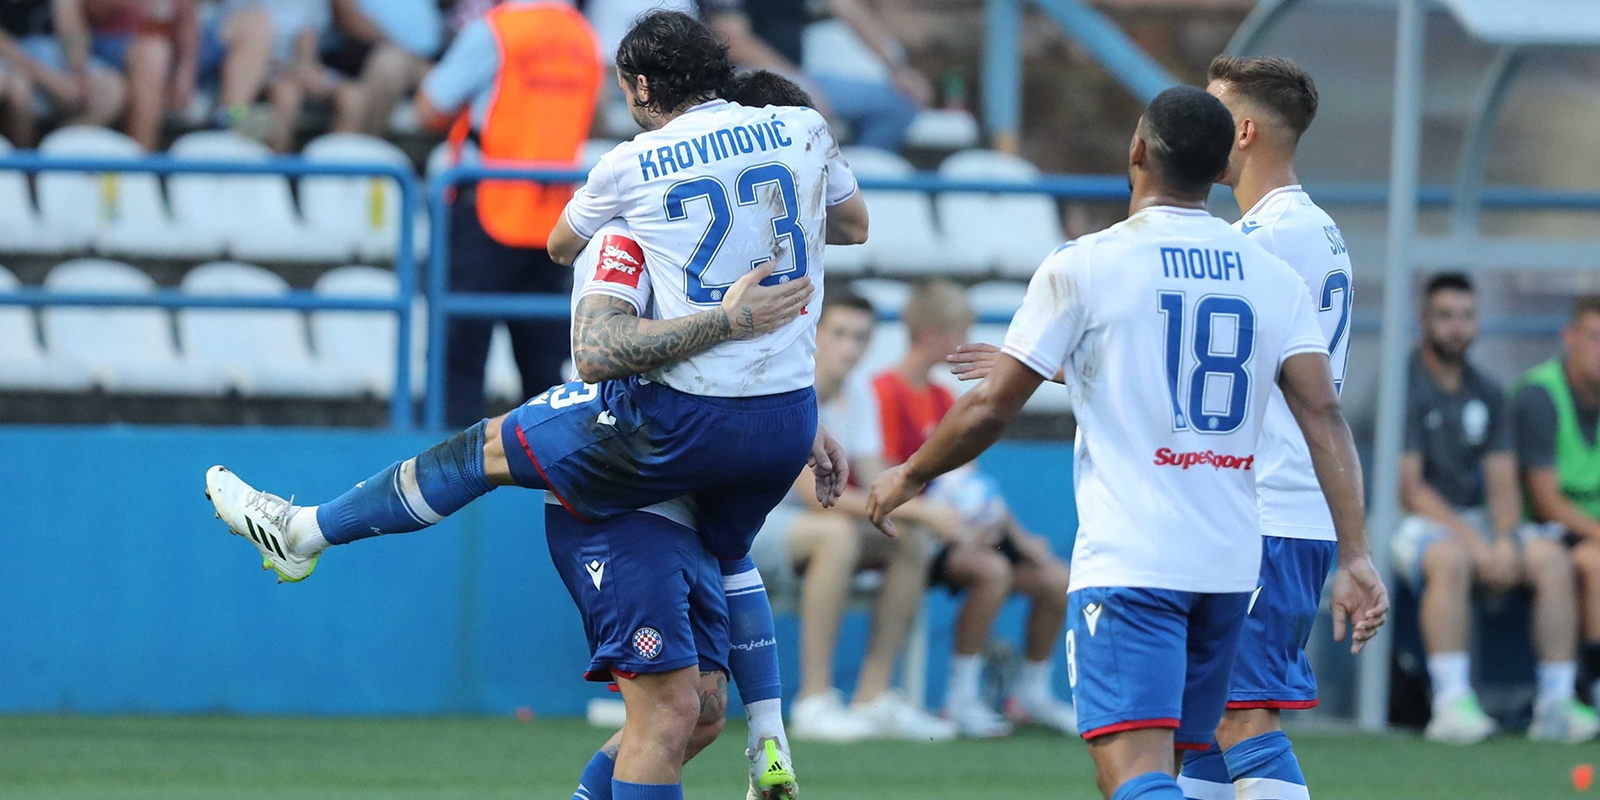 NOGOMET UŽIVO: Hajduk i Varaždin igraju utakmicu 15. kola HNL-a na